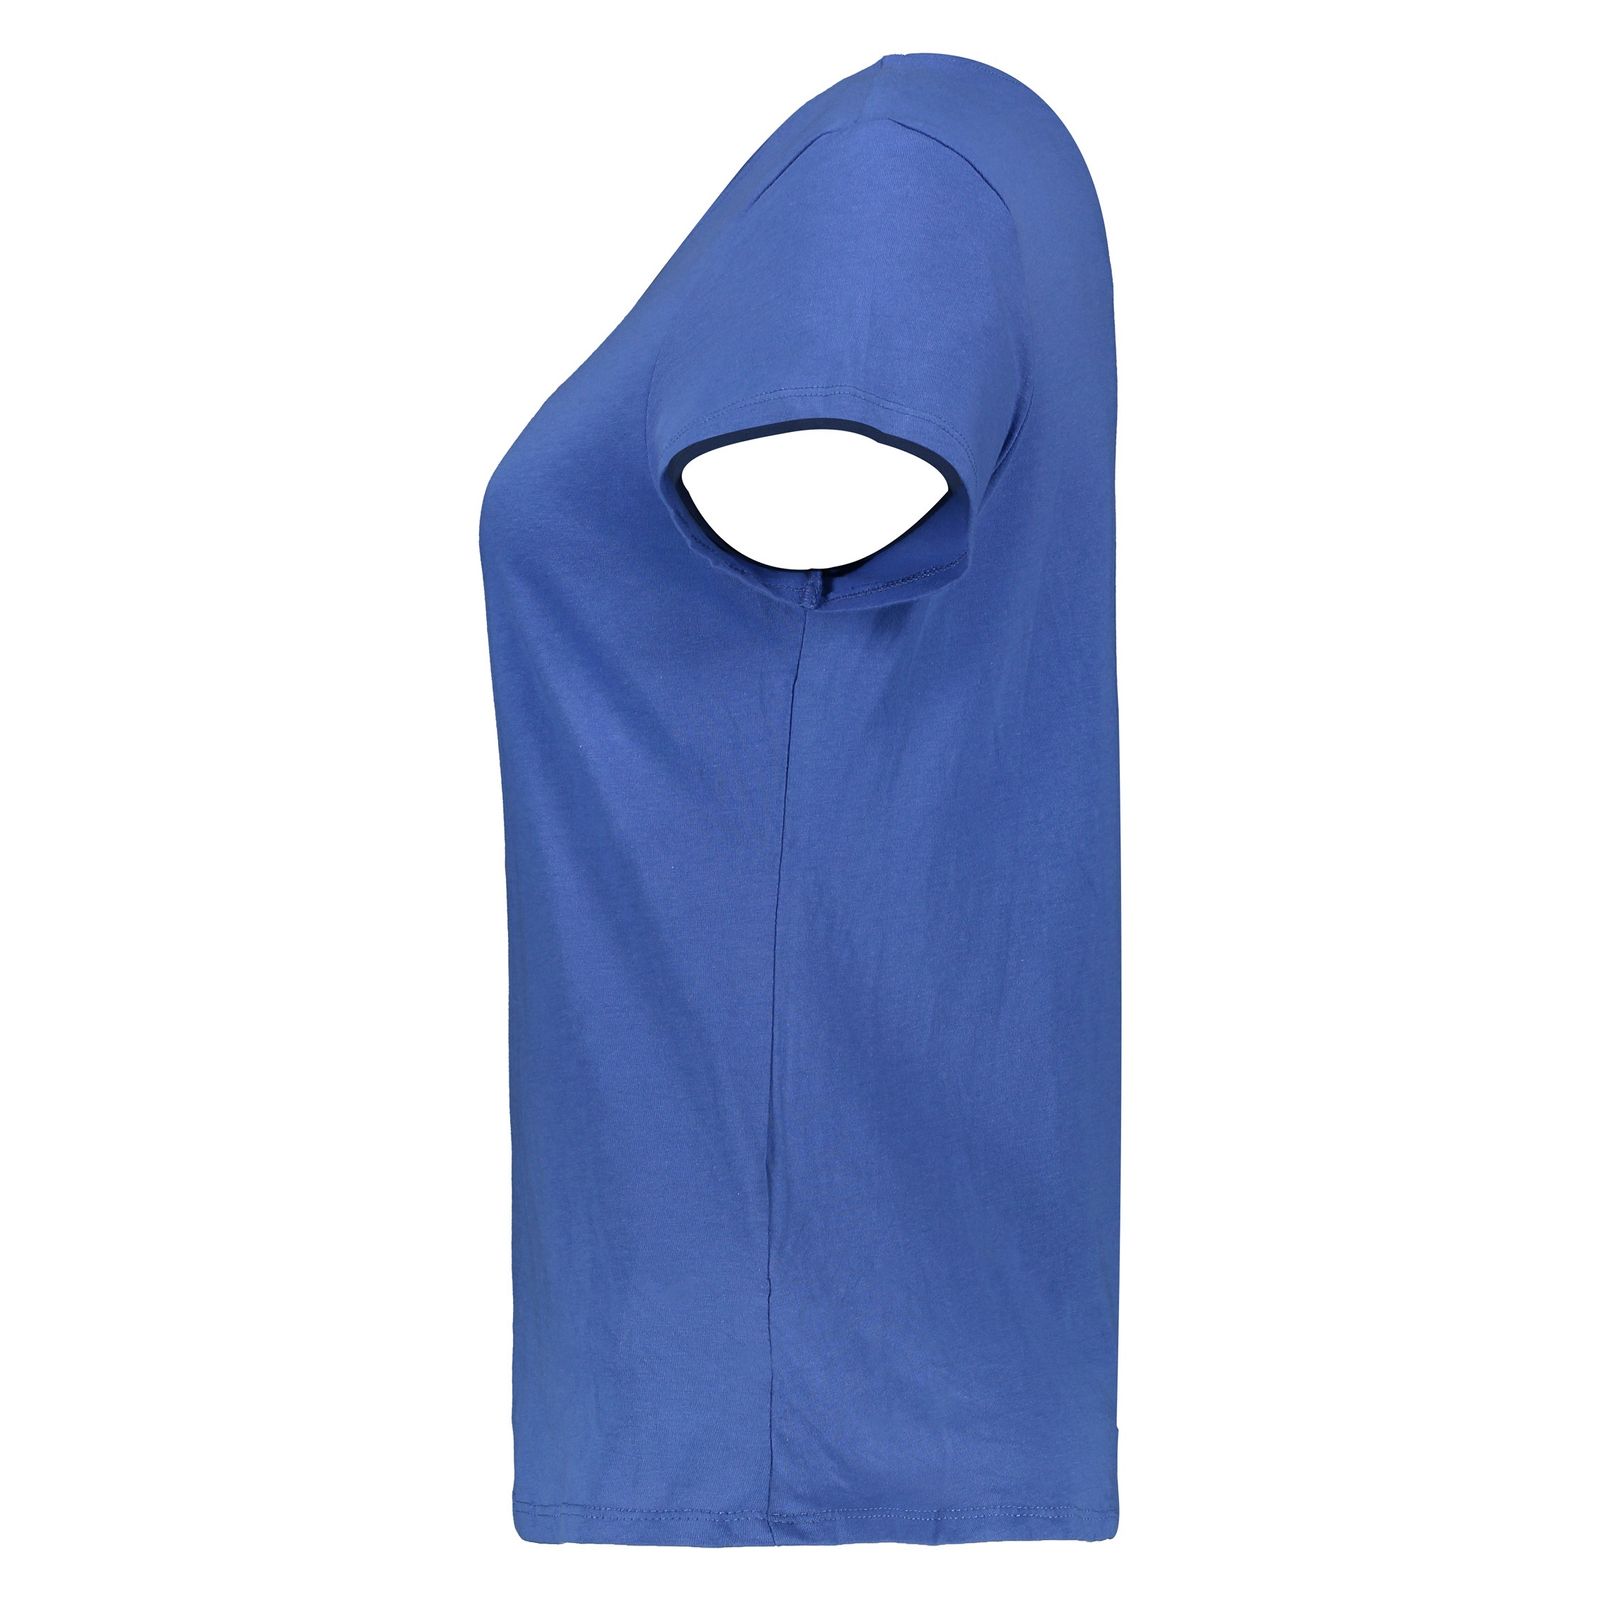 تی شرت زنانه اسپرینگ فیلد مدل 1383531-Blue - آبی - 4